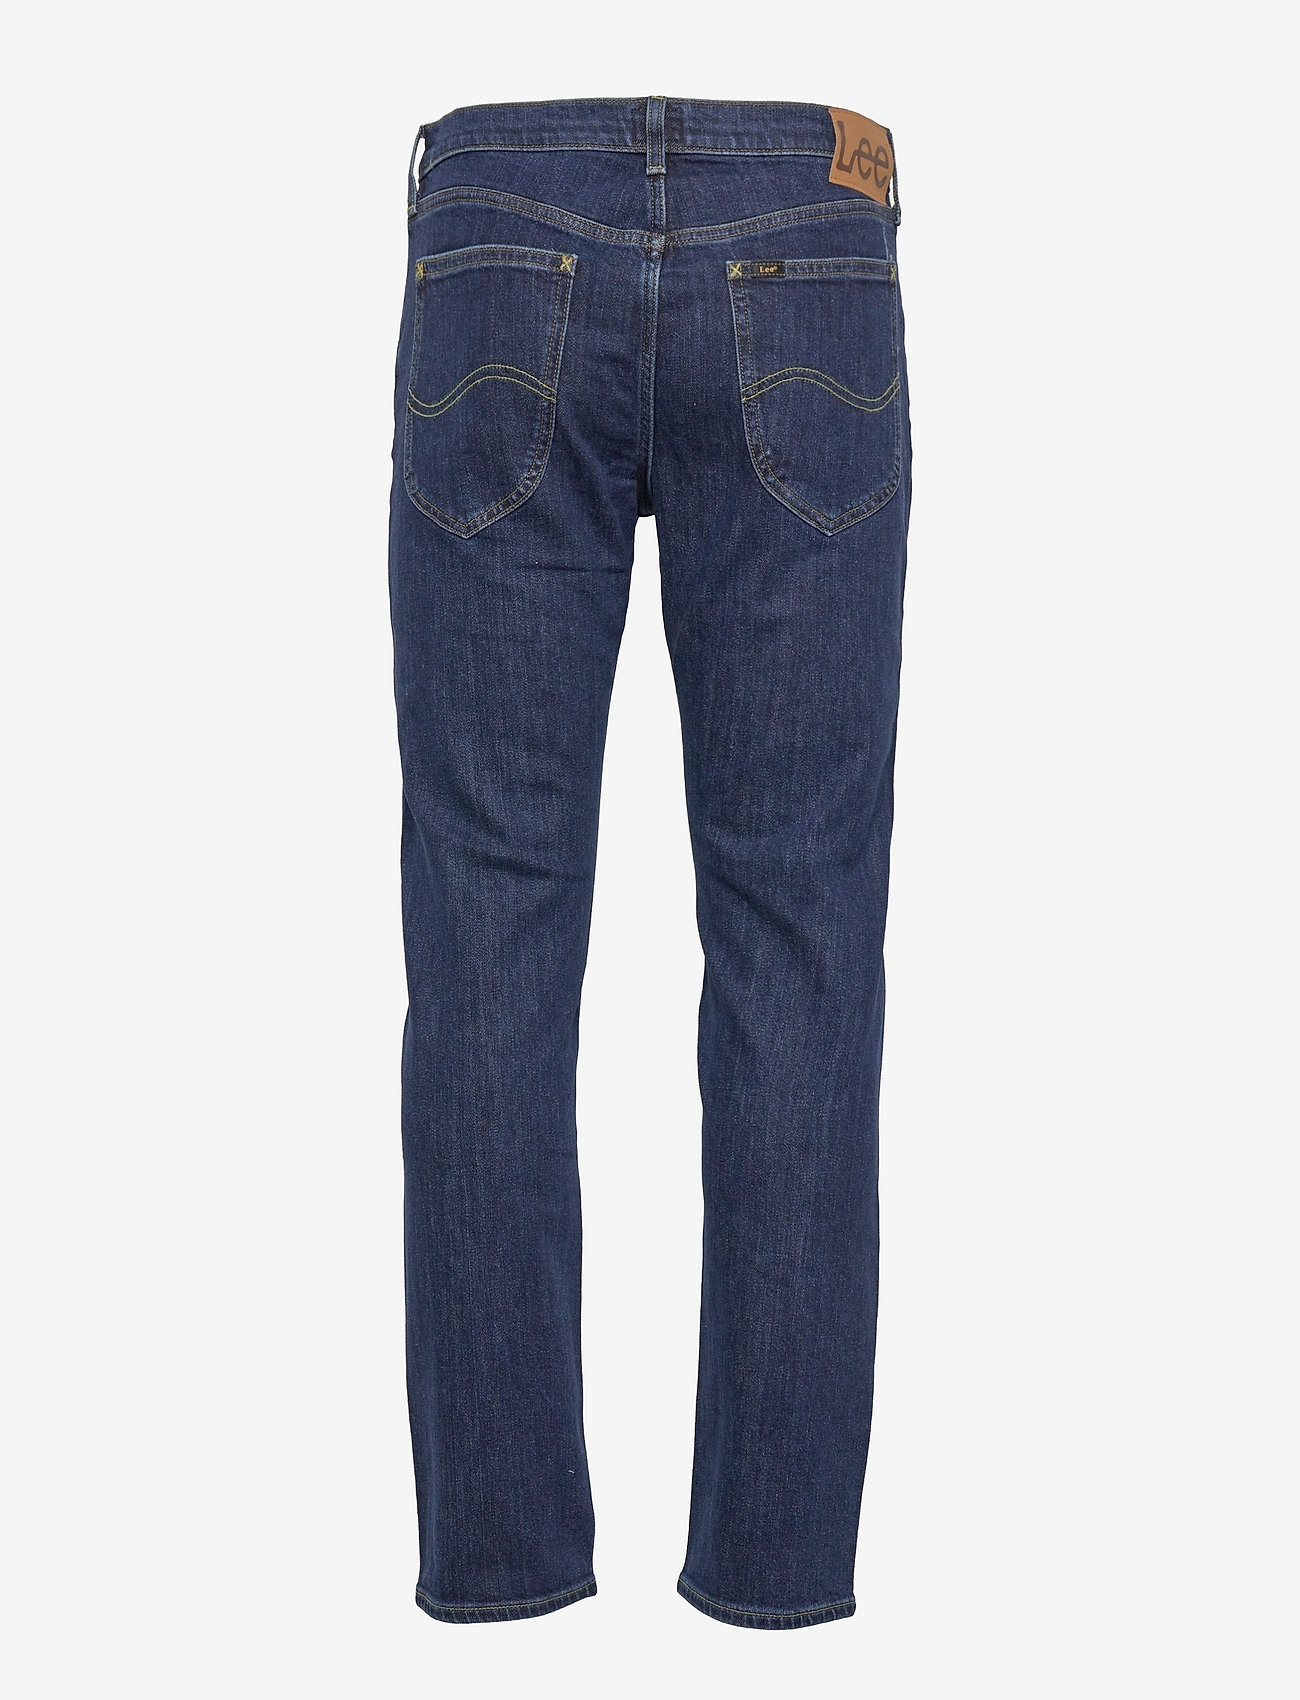 Lee Jeans - DAREN ZIP FLY - regular jeans - deep dark stone - 1